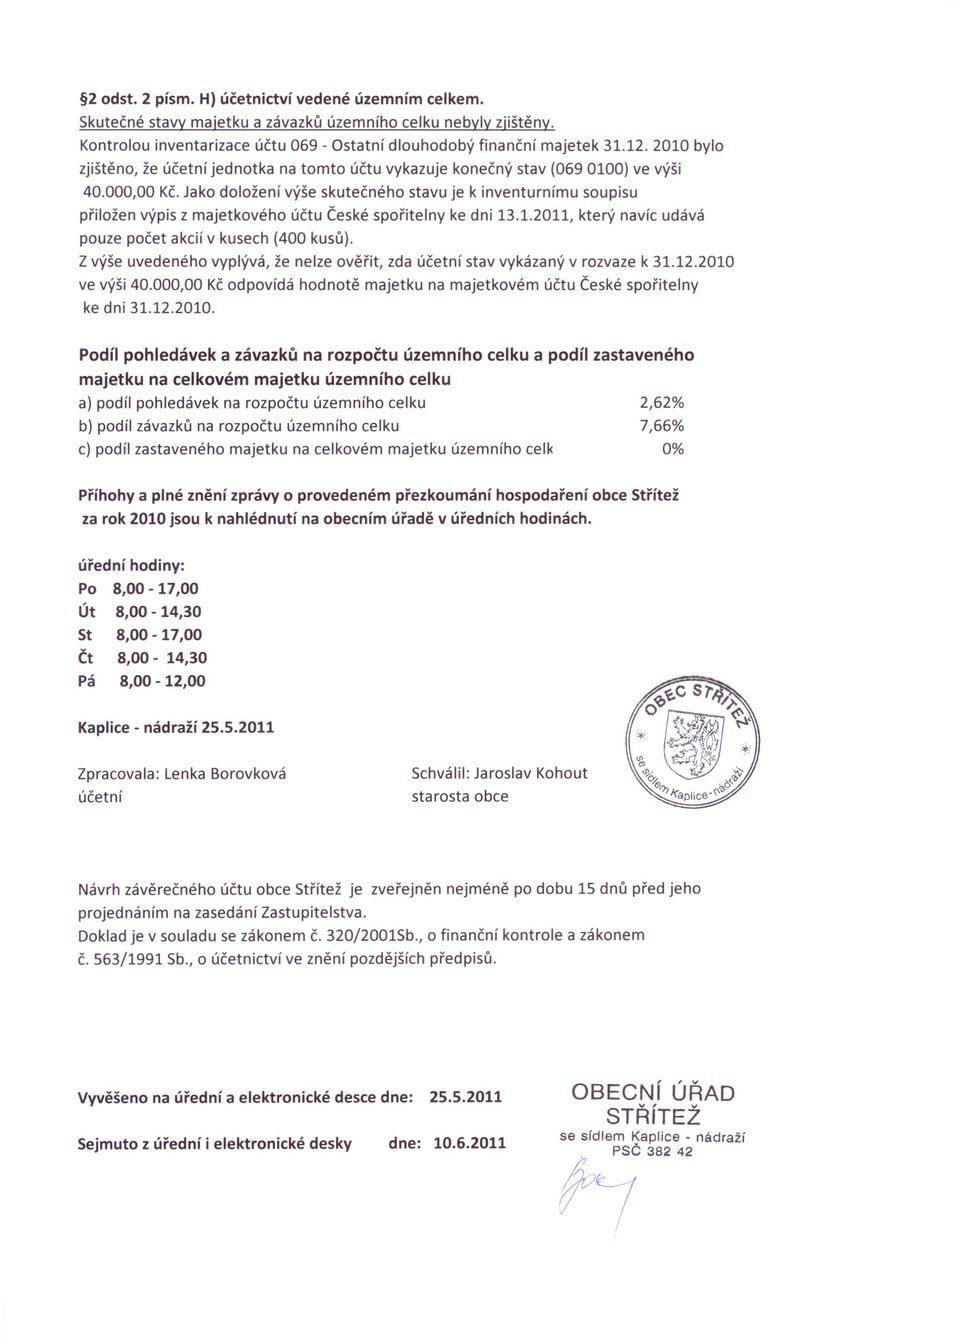 Jako doložení výše skutečného stavu je k inventurnímu soupisu přiložen výpis z majetkového účtu České spořitelny ke dni 13.1.2011, který navíc udává pouze počet akcií v kusech (400 kusů).